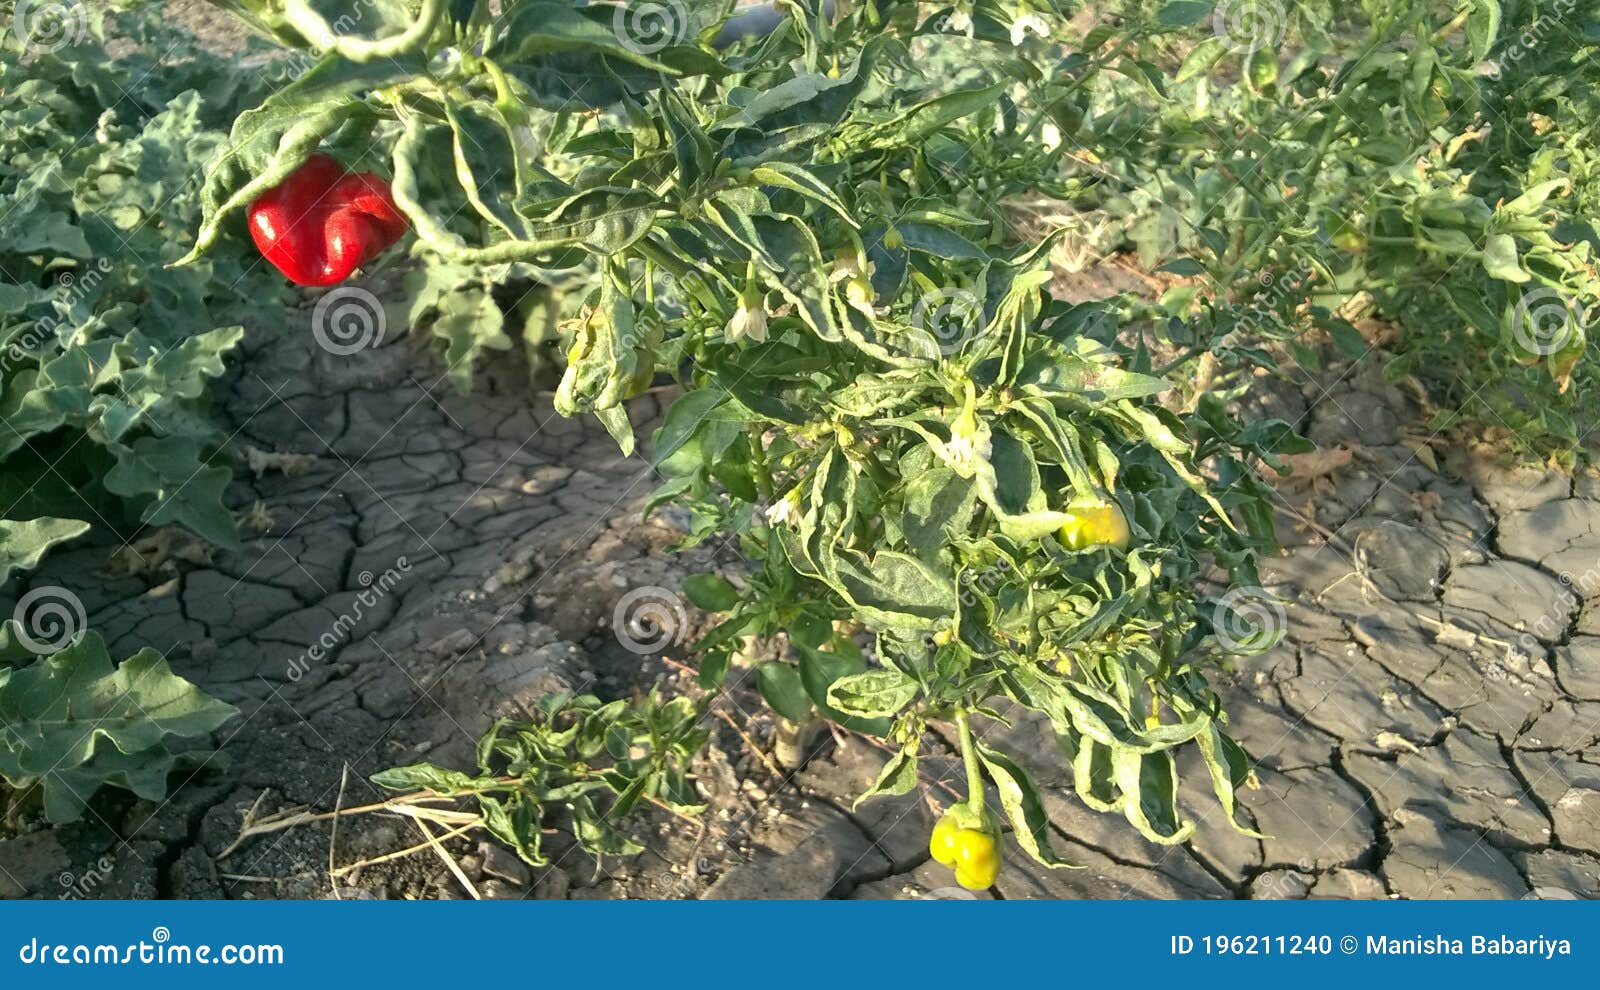 red chilli plant in the farm